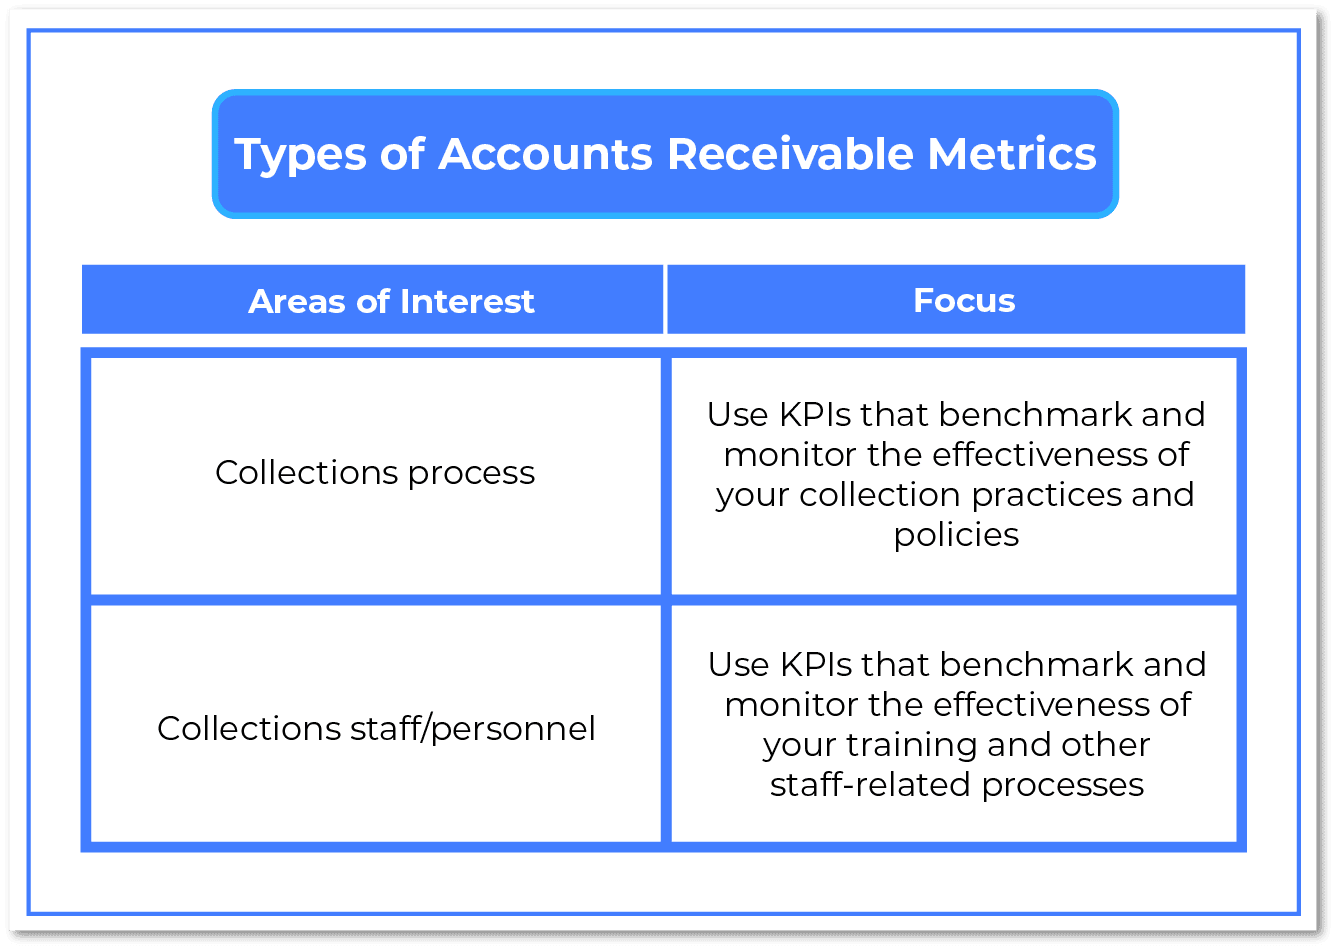 Types of Accounts Receivable Metrics